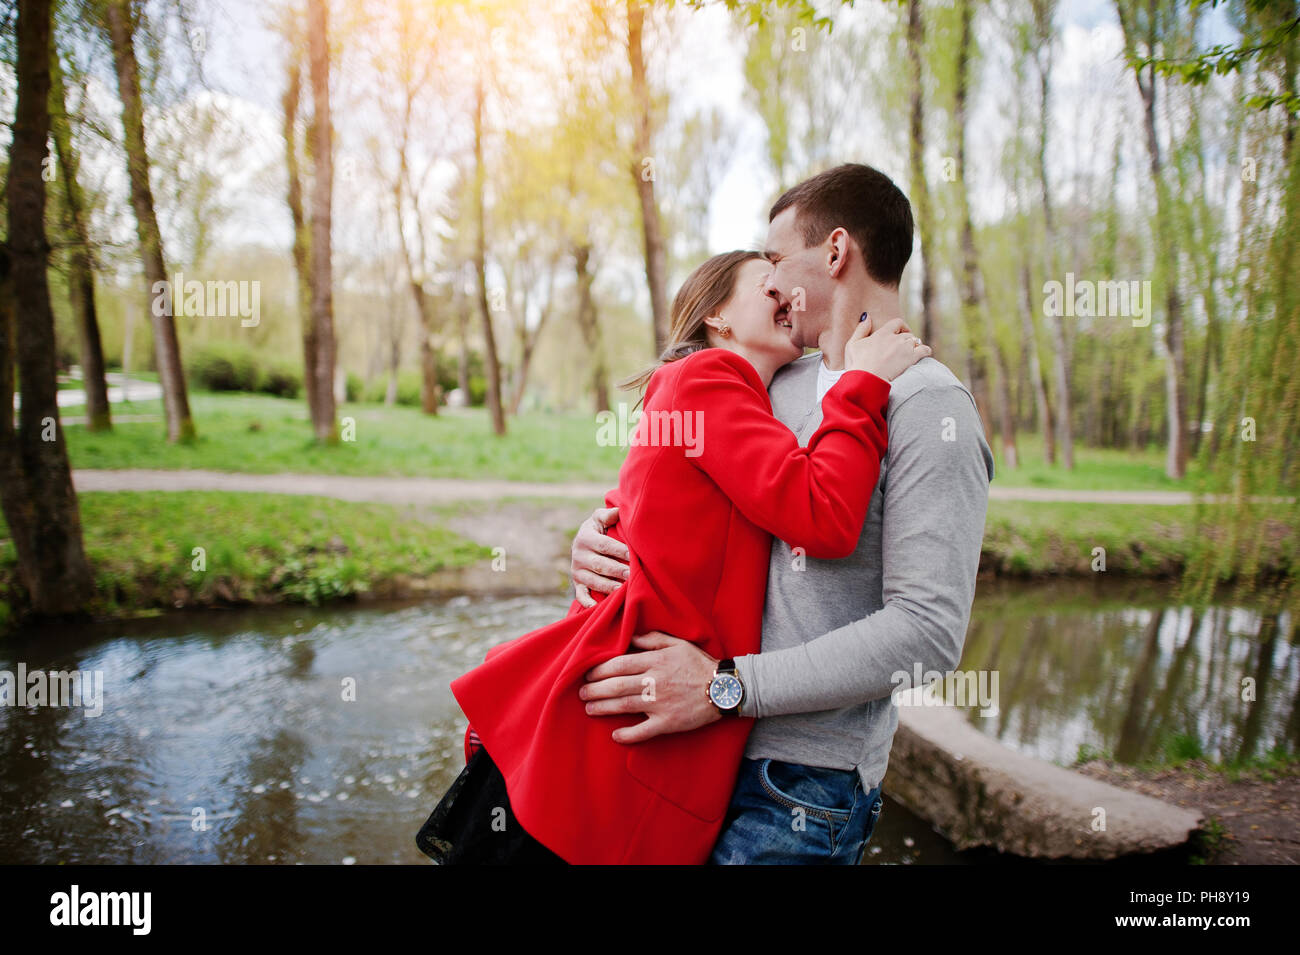 Abrazos Y Beso Par En Amor En Movimiento Foto Imagen De Stock